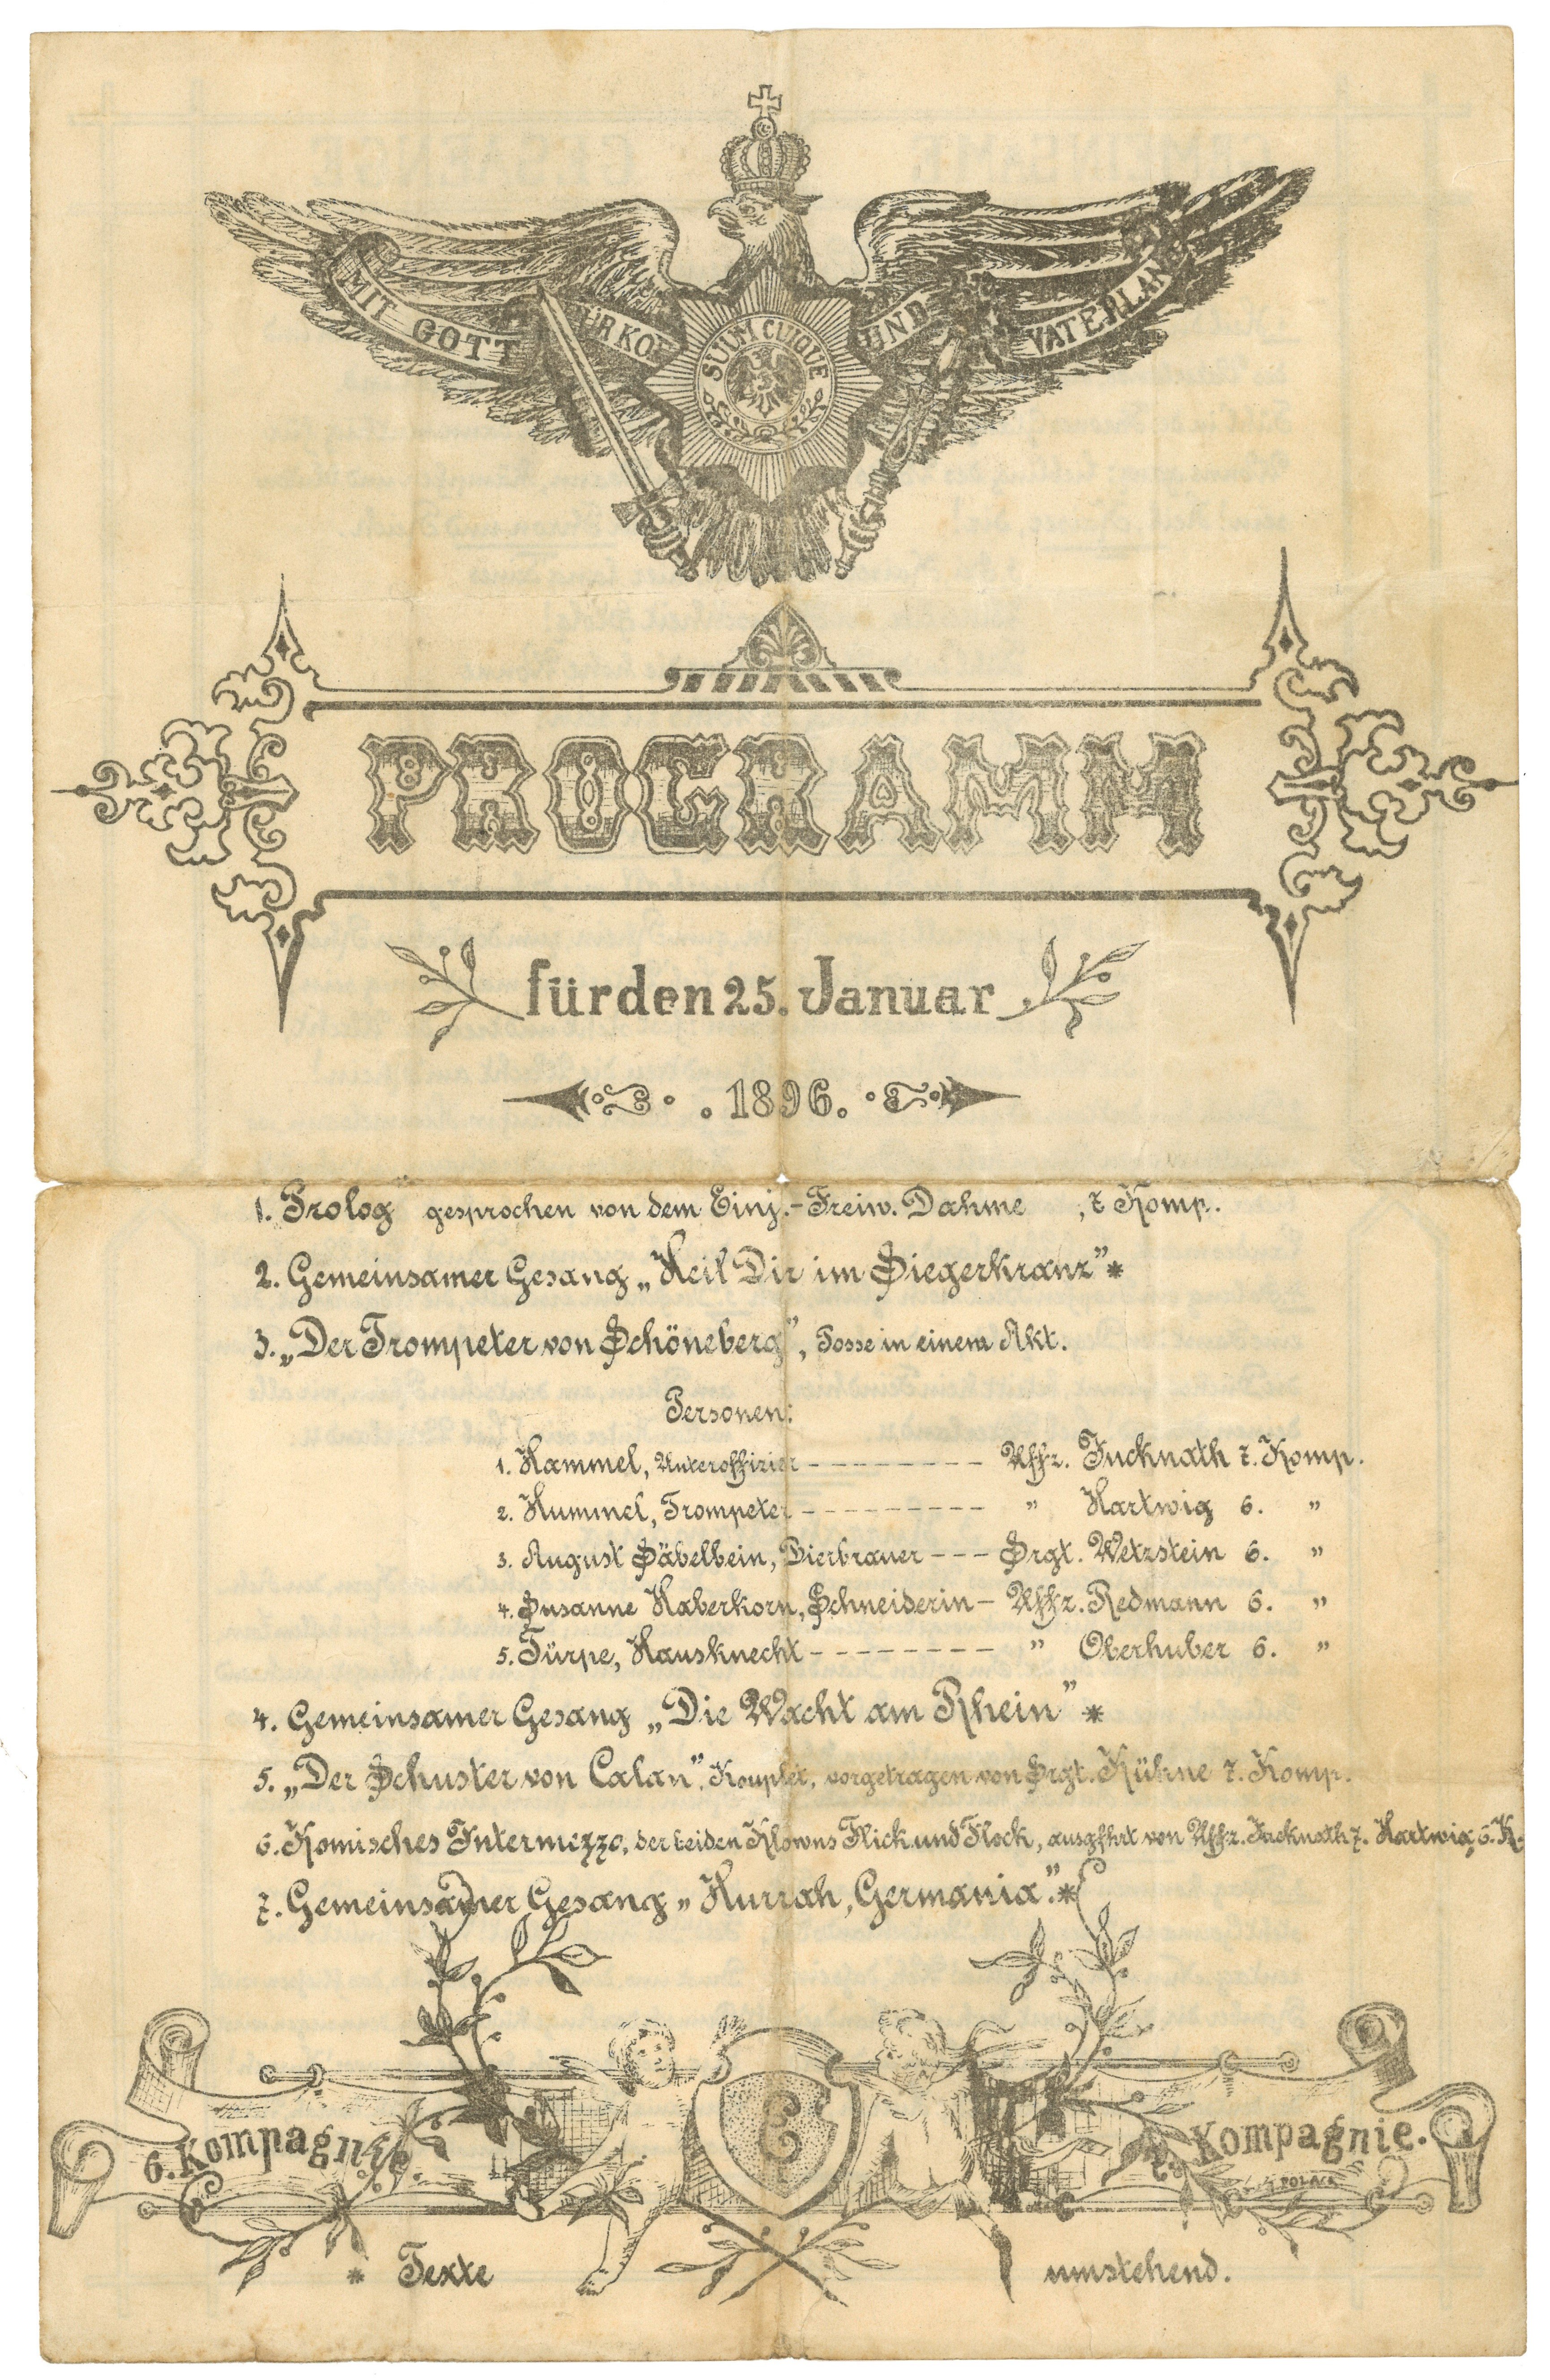 Programm zu einer Feier der 6. und 7. Kompanie des Königin-Elisabeth-Garde-Grenadier-Regiments Nr. 3 1896 (Landesgeschichtliche Vereinigung für die Mark Brandenburg e.V., Archiv CC BY)